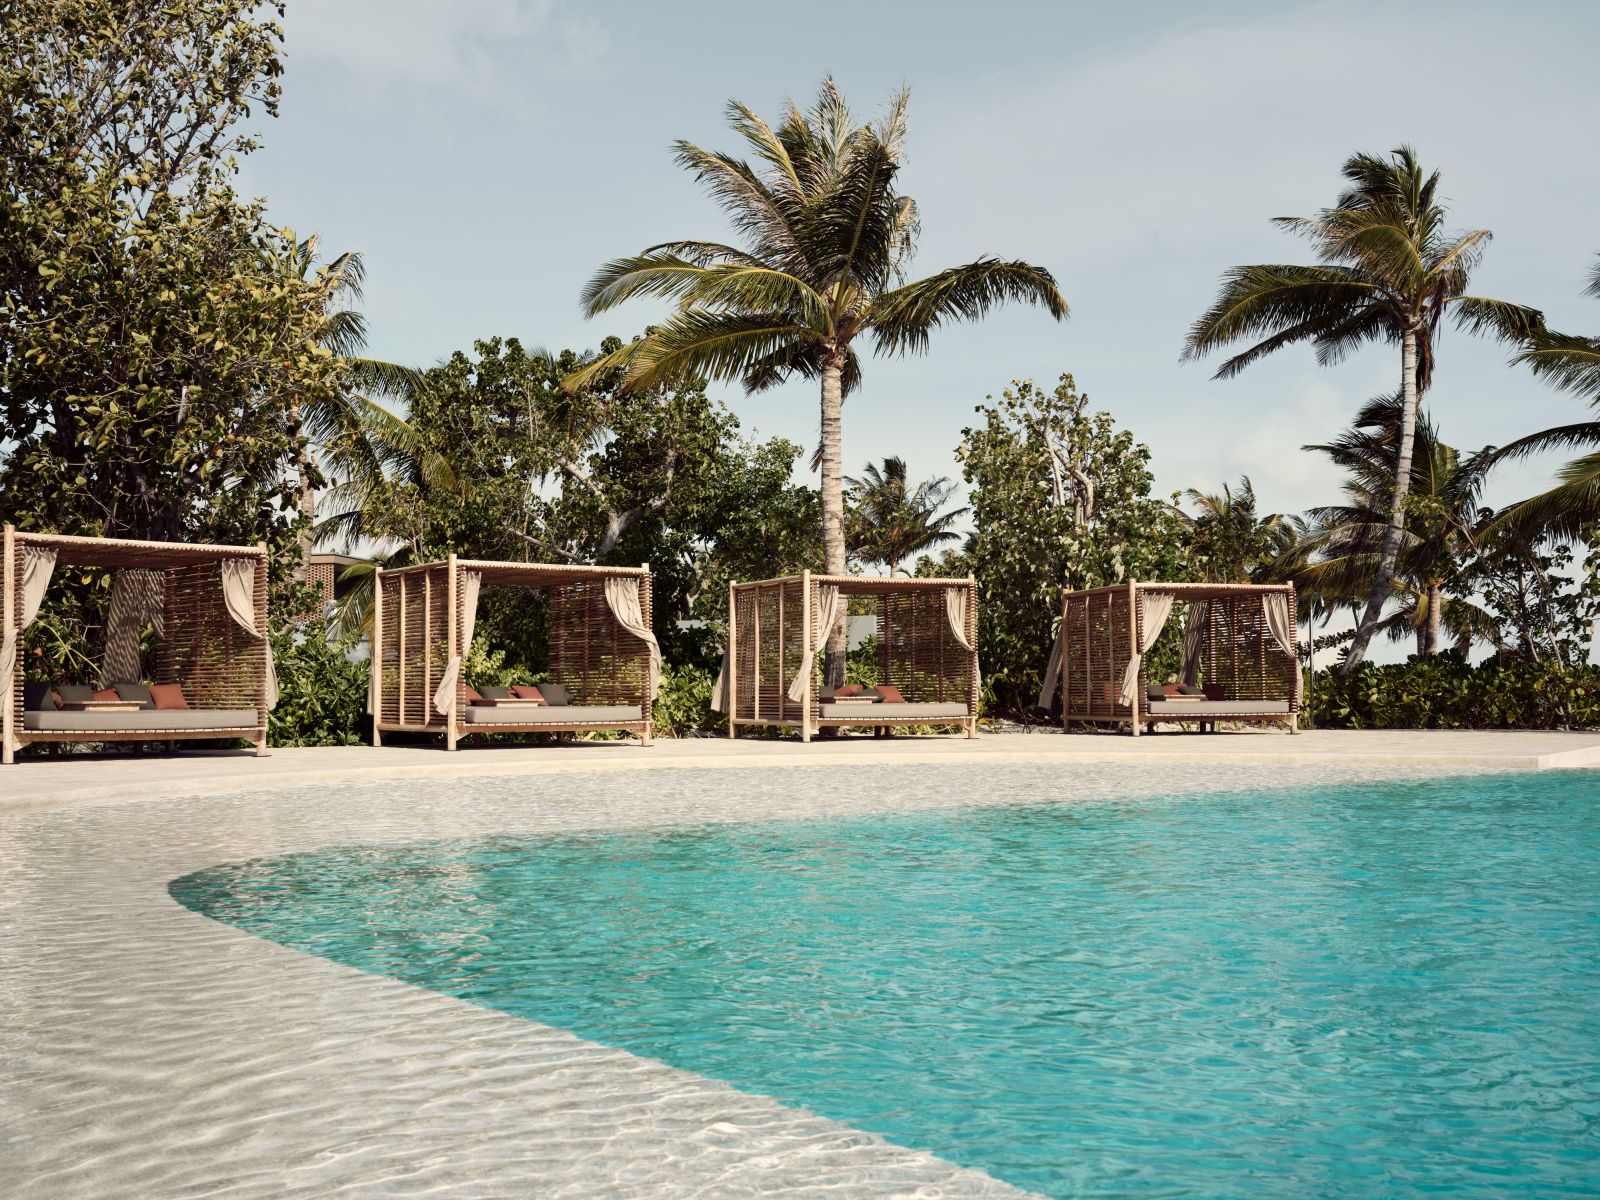 Cabana-lined pool at Fari Beach Club at luxury resort Patina in the Maldives